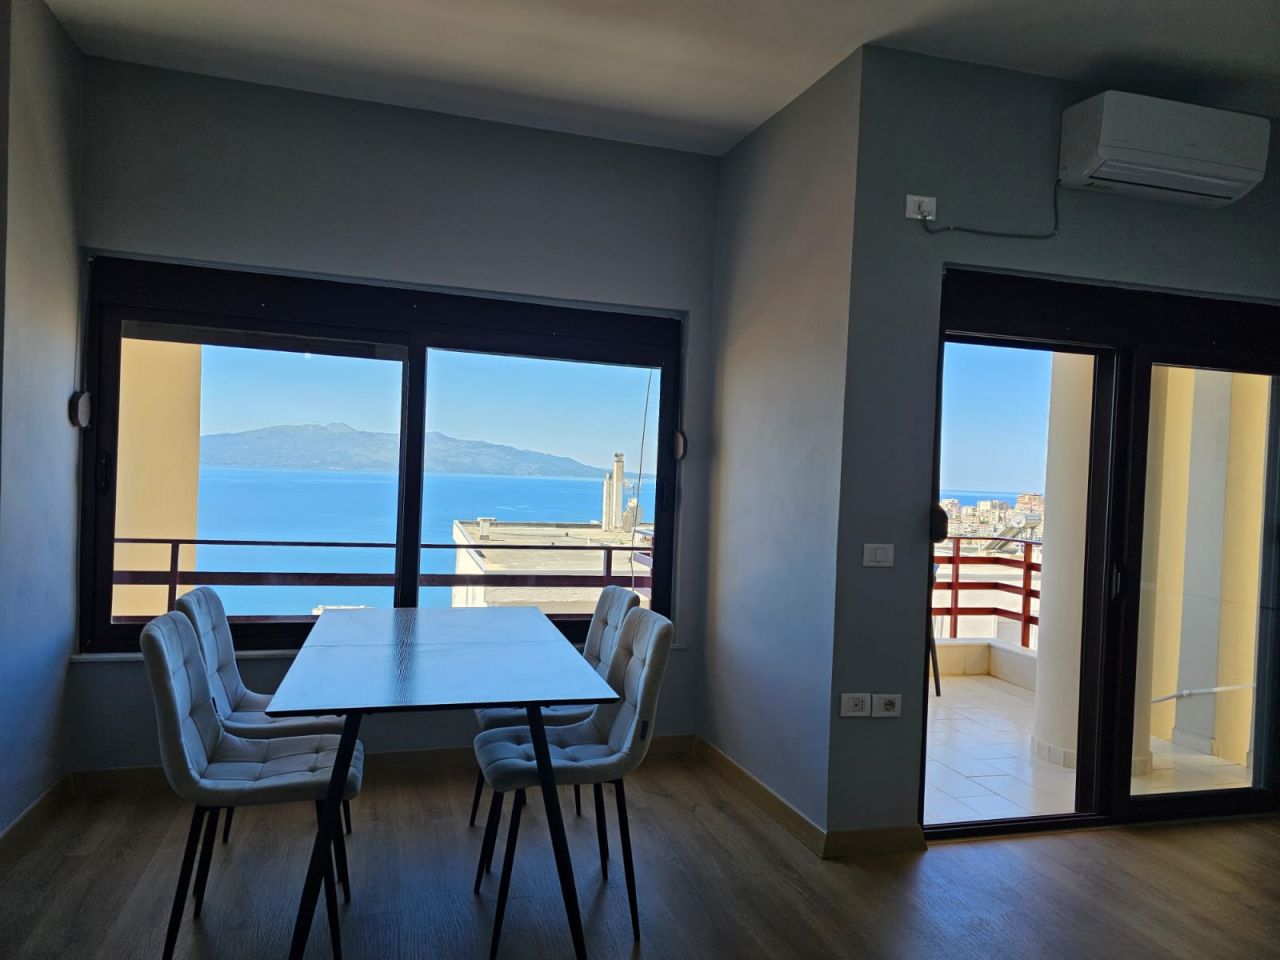 Piękny Apartament Na Sprzedaż W Sarandzie W Albanii Ze Wspaniałym Panoramicznym Widokiem Na Zatokę Saranda W Niewielkiej Odległości Od Centrum Miasta